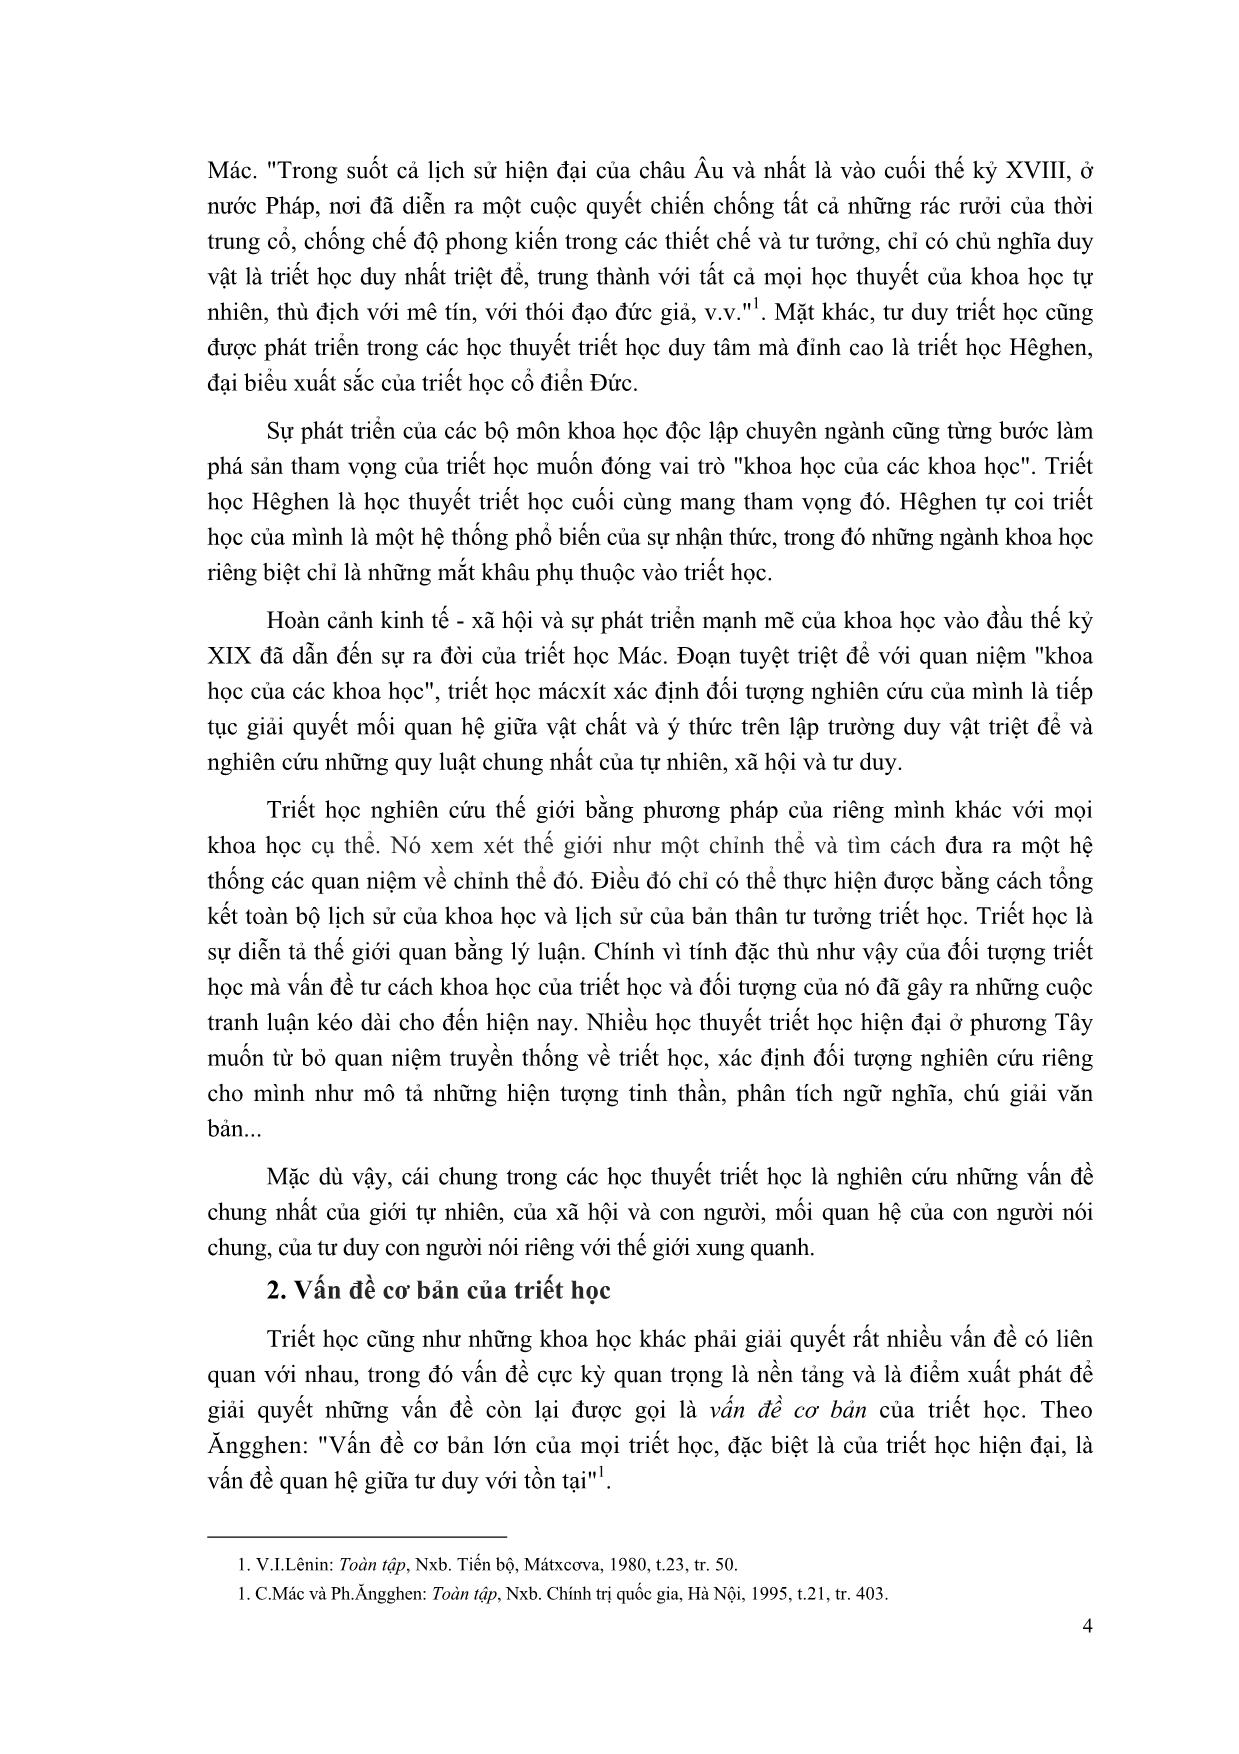 Giáo trình Triết học Mác-Lênin (Mới) trang 5